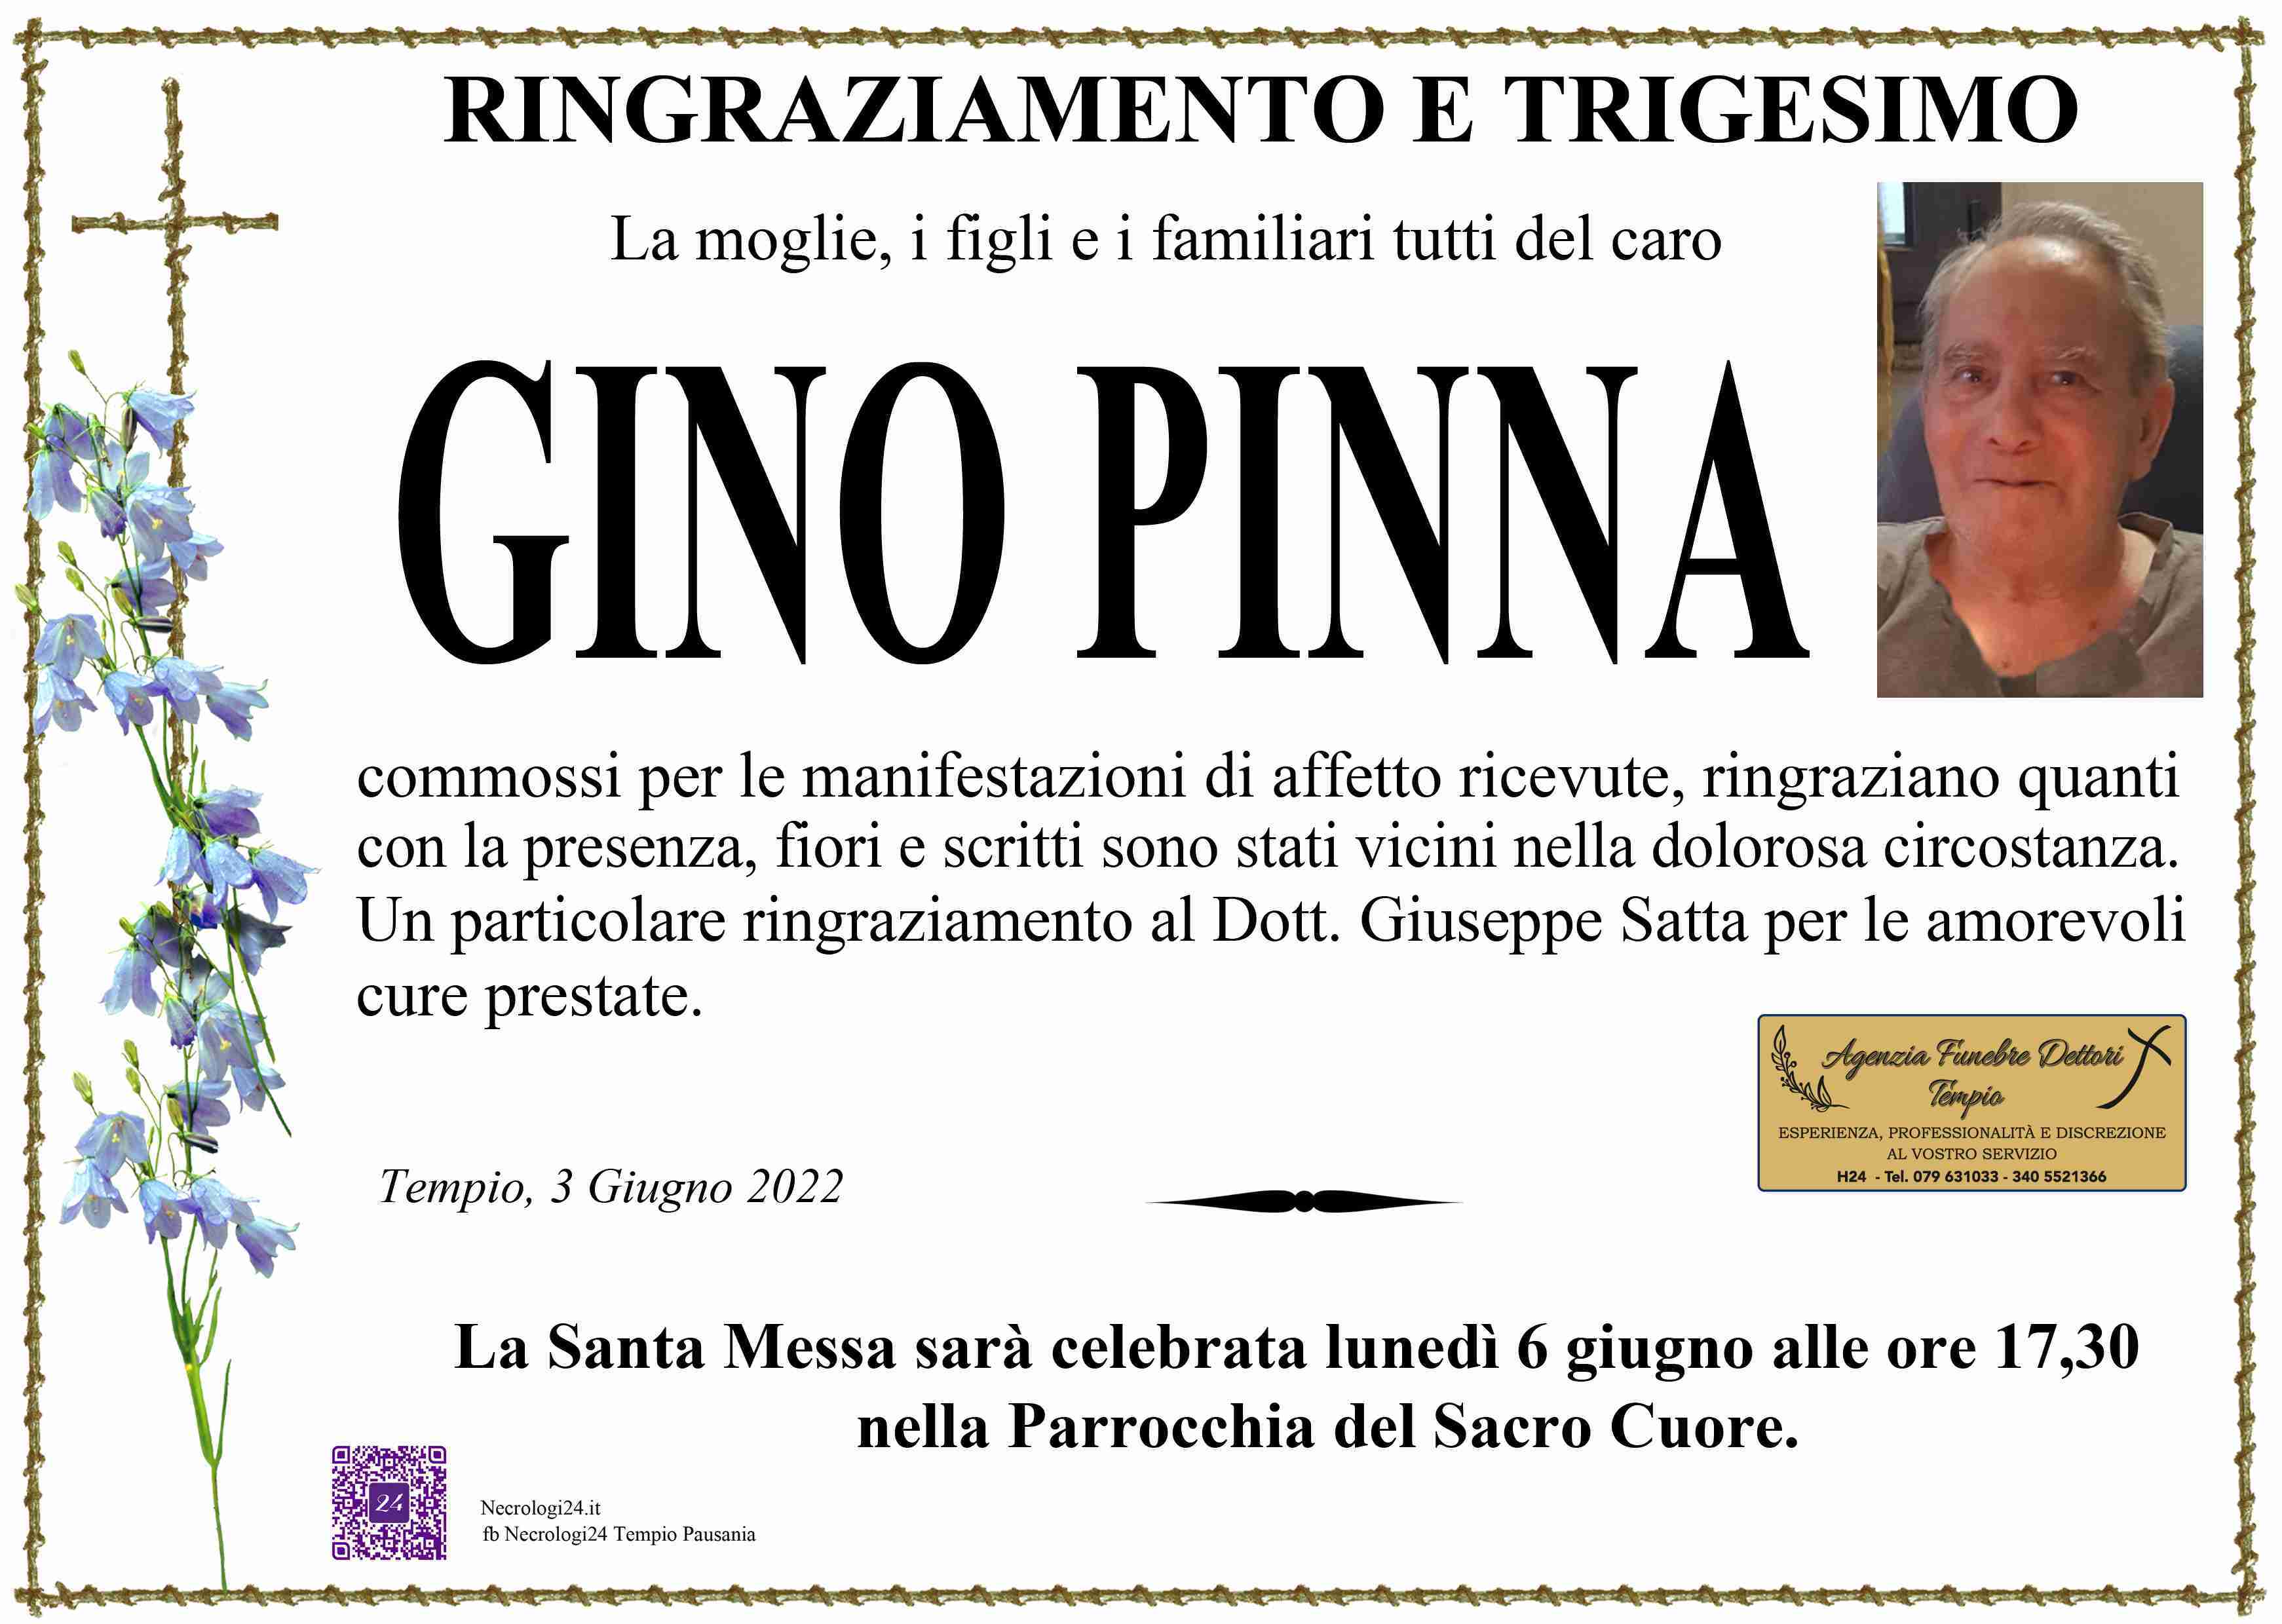 Luigi Pinna